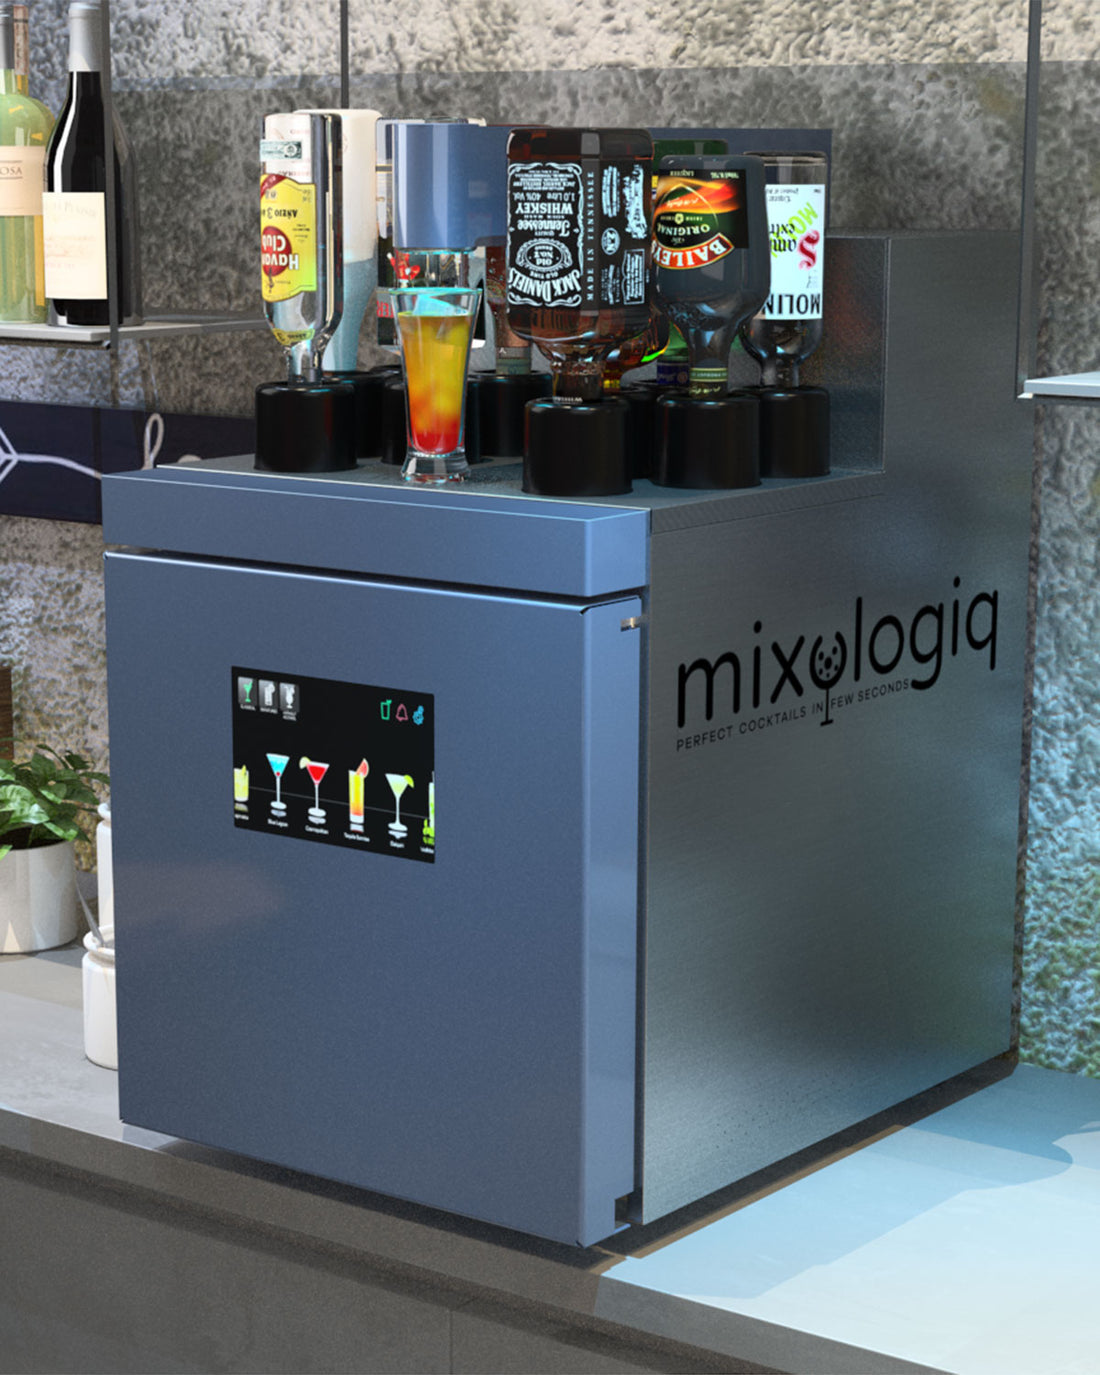 Mixologiq 2 Cocktail Machine – Grand Cru Wine Fridges